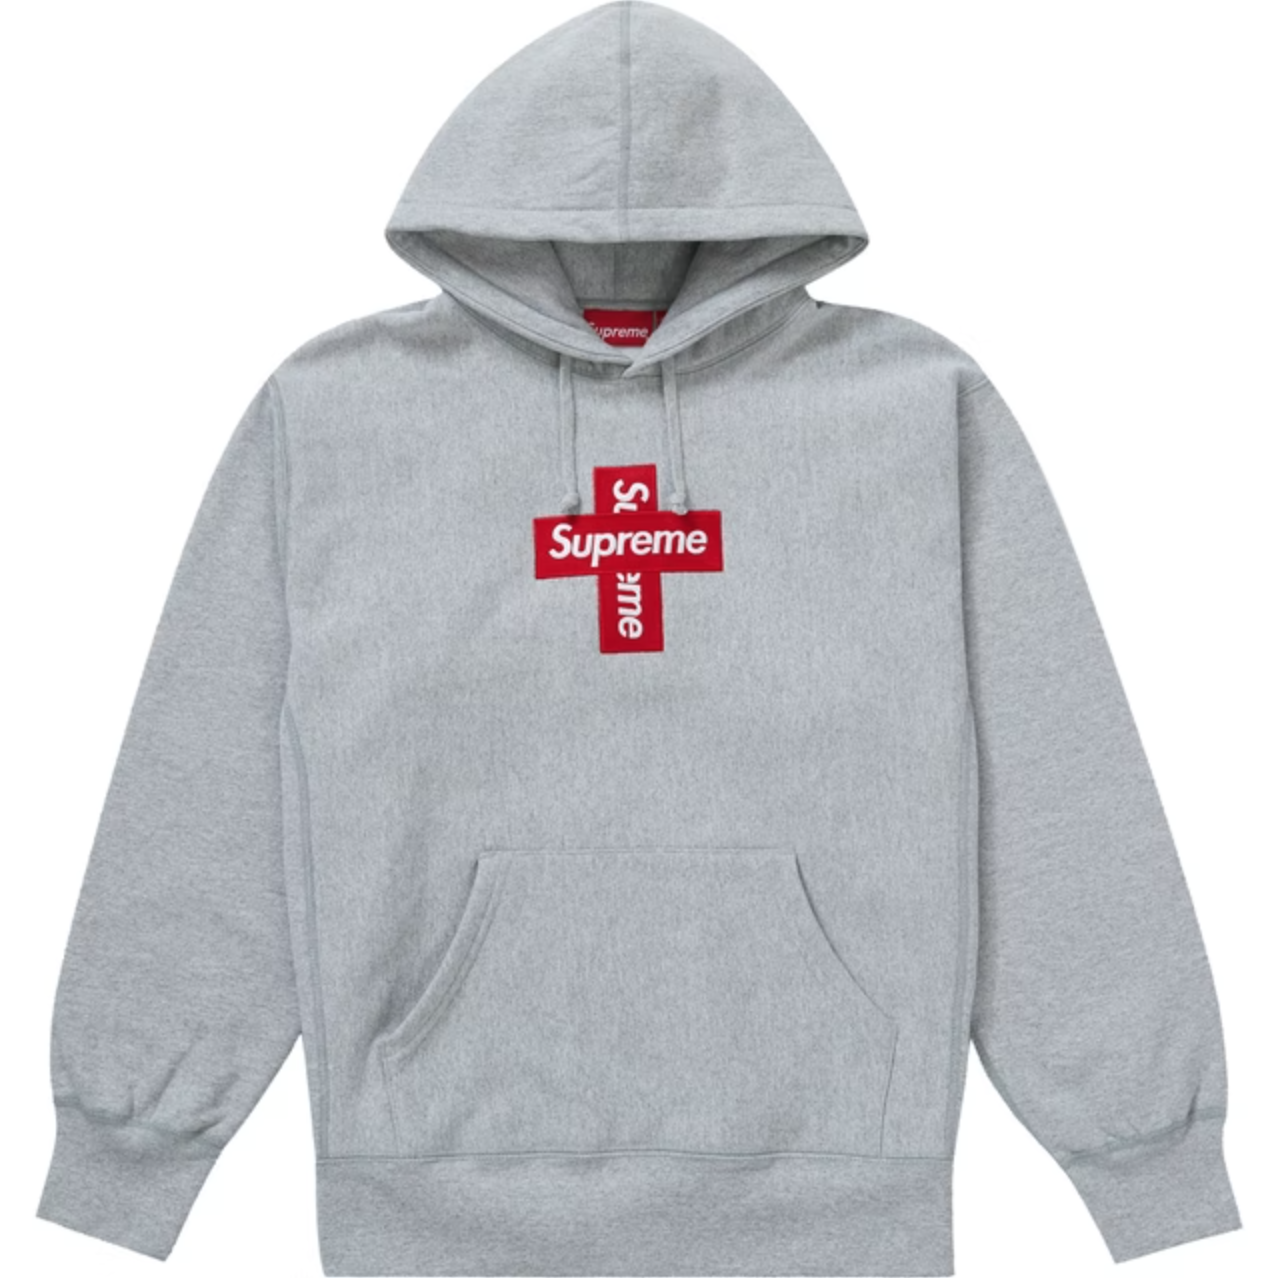 NEW Supreme Cross Box Logo Hooded Sweatshirt Heather Grey 